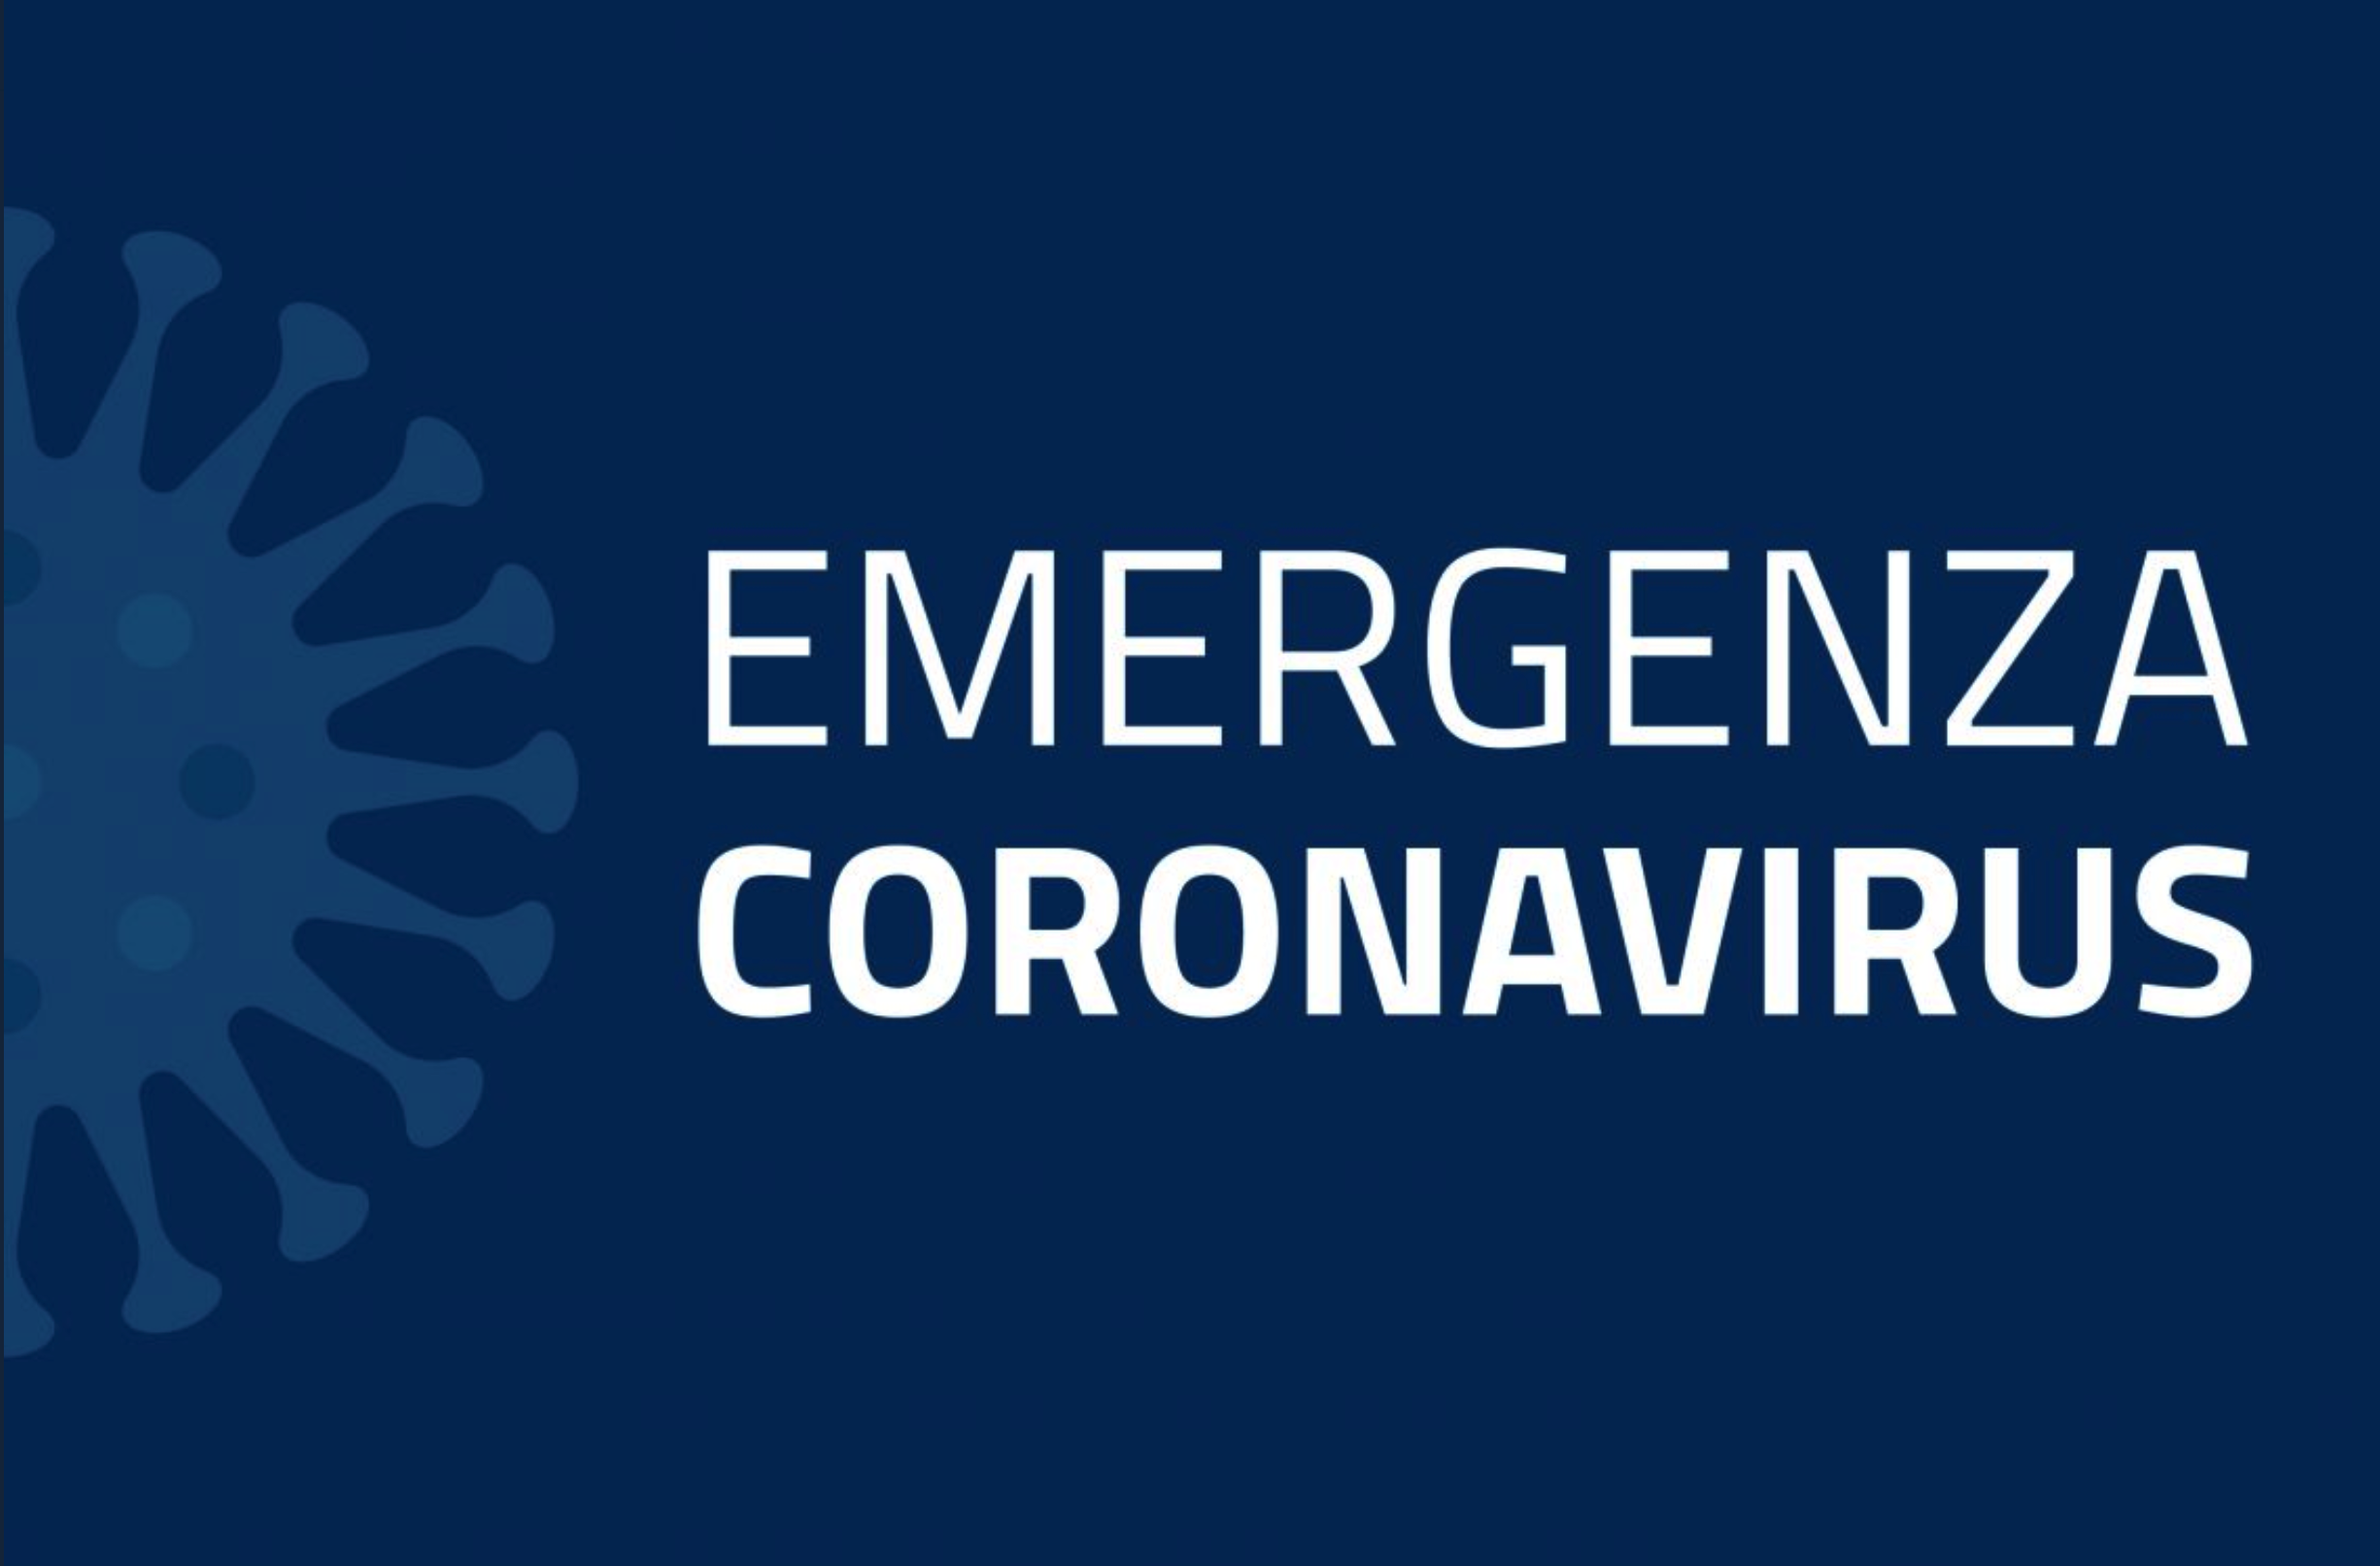 Informazioni utili durante l’emergenza COVID 19